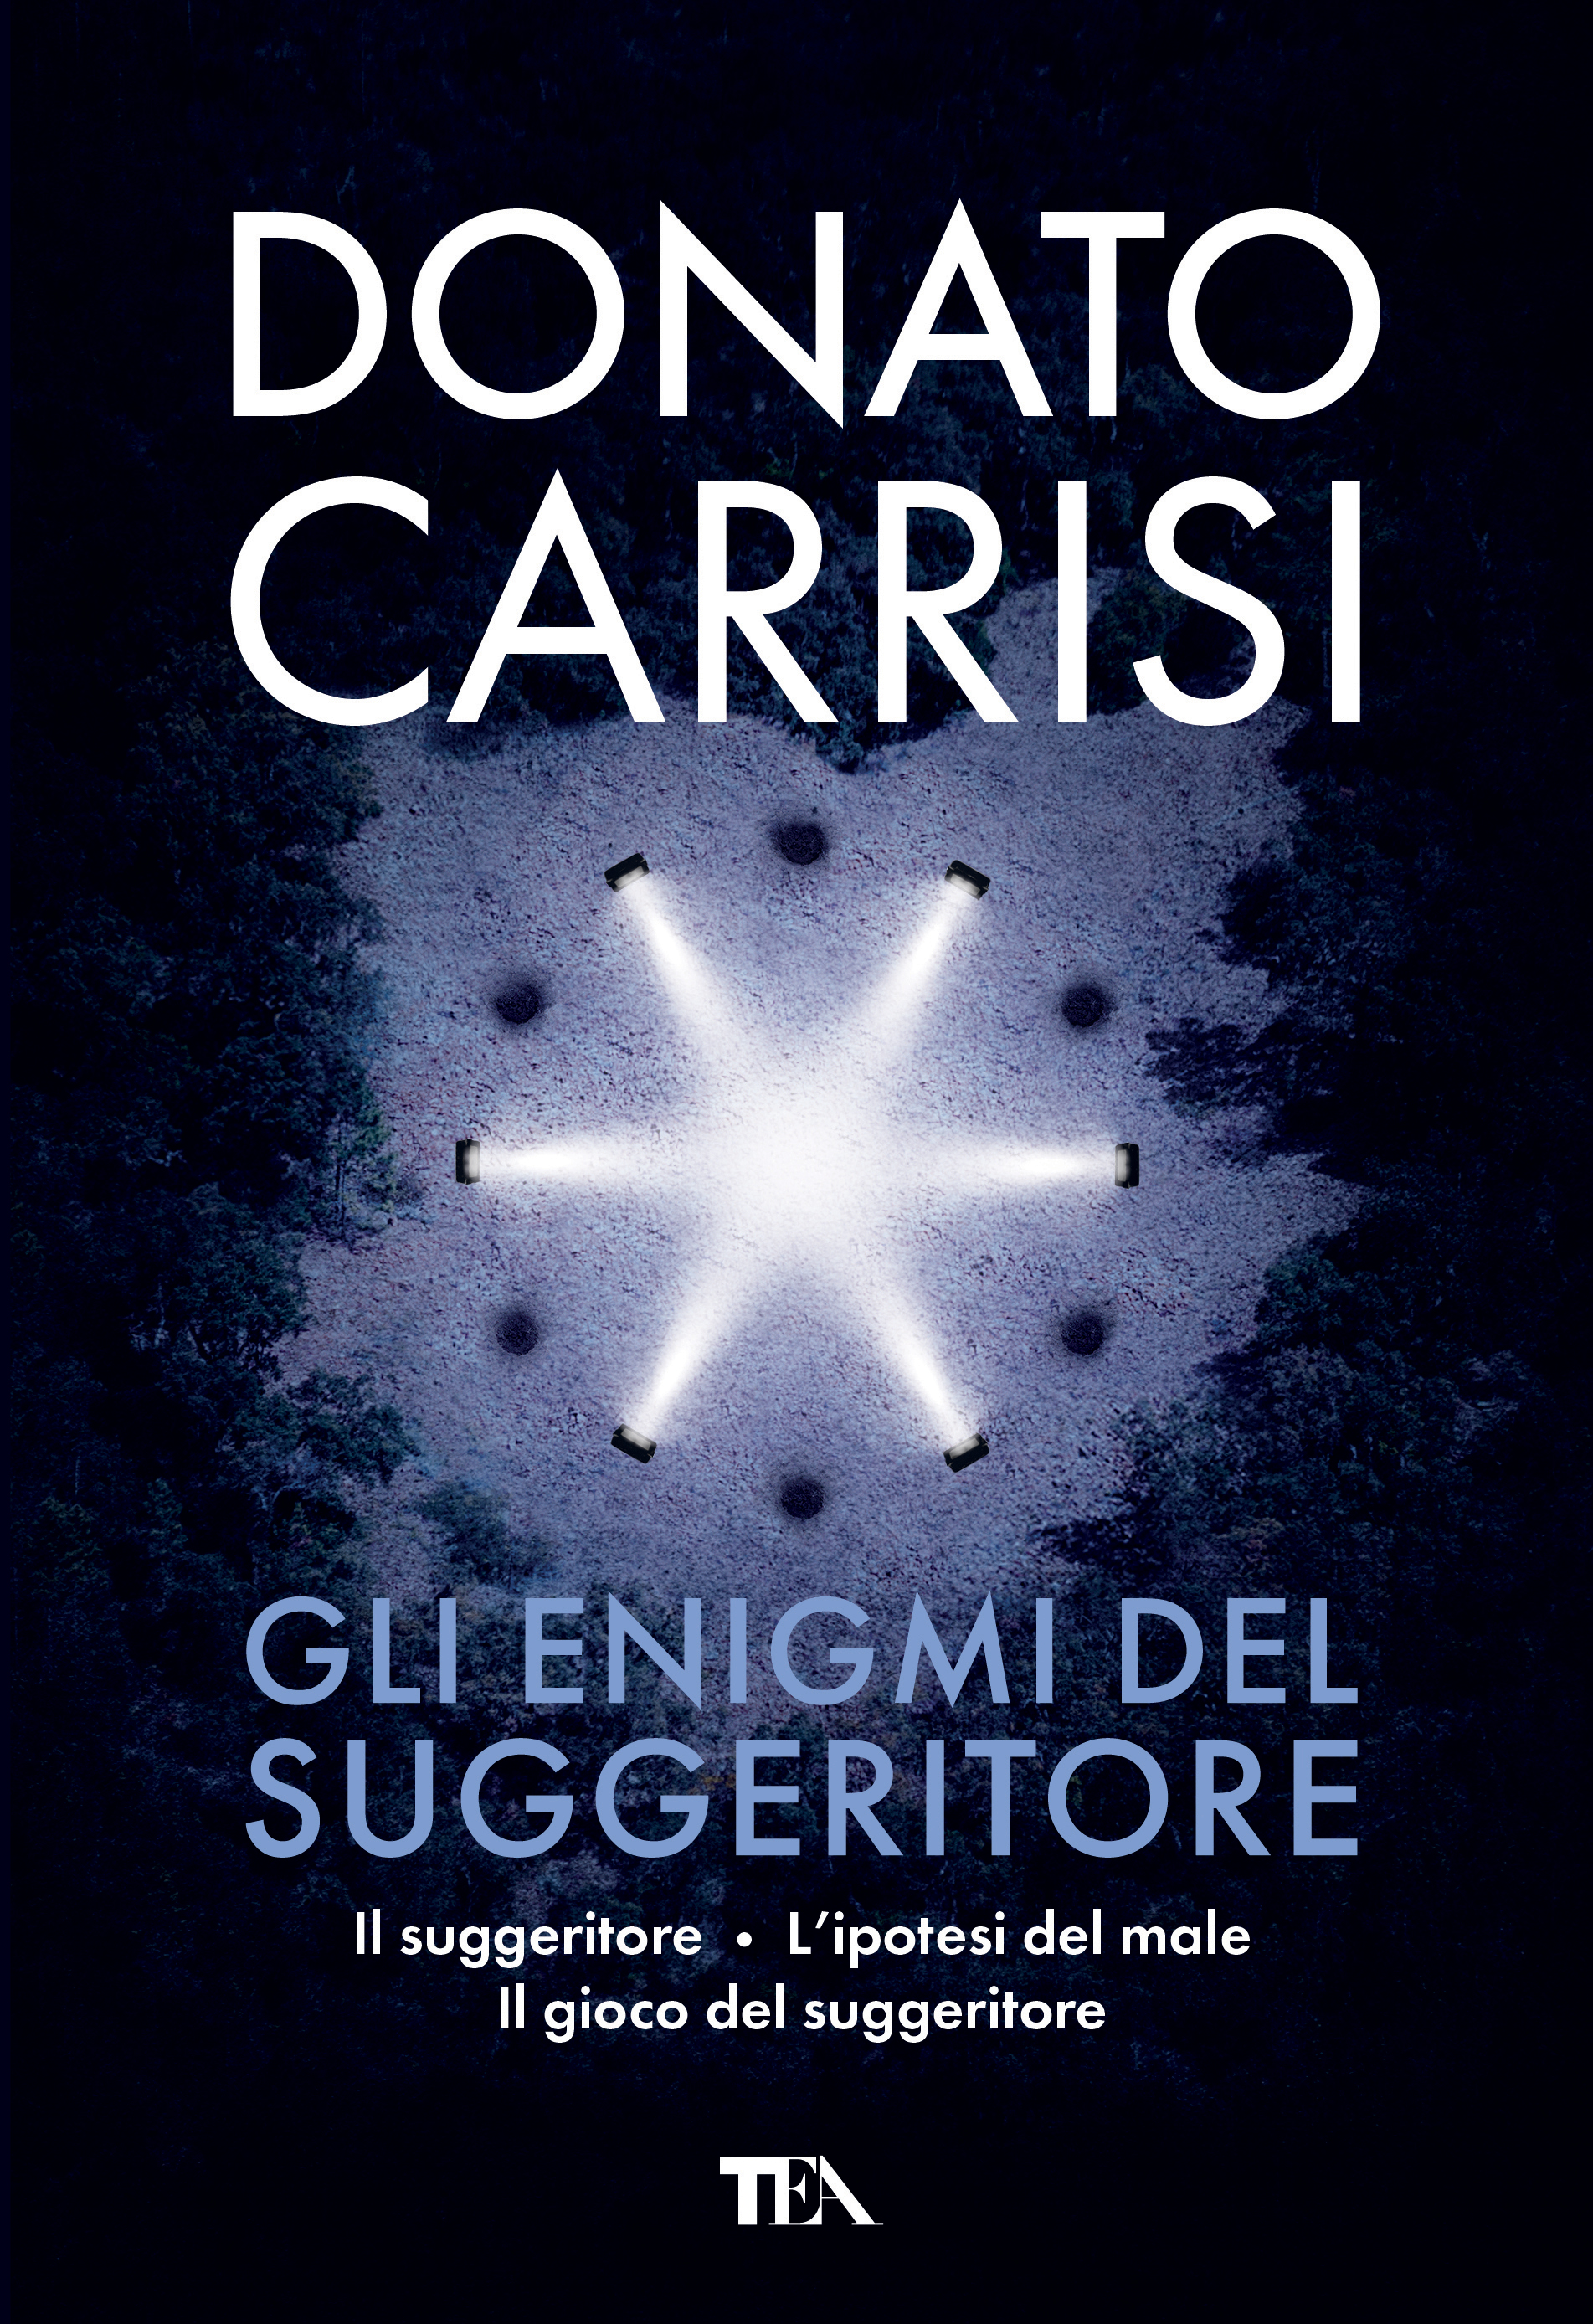 Donato Carrisi - Gli enigmi del suggeritore — TEA Libri